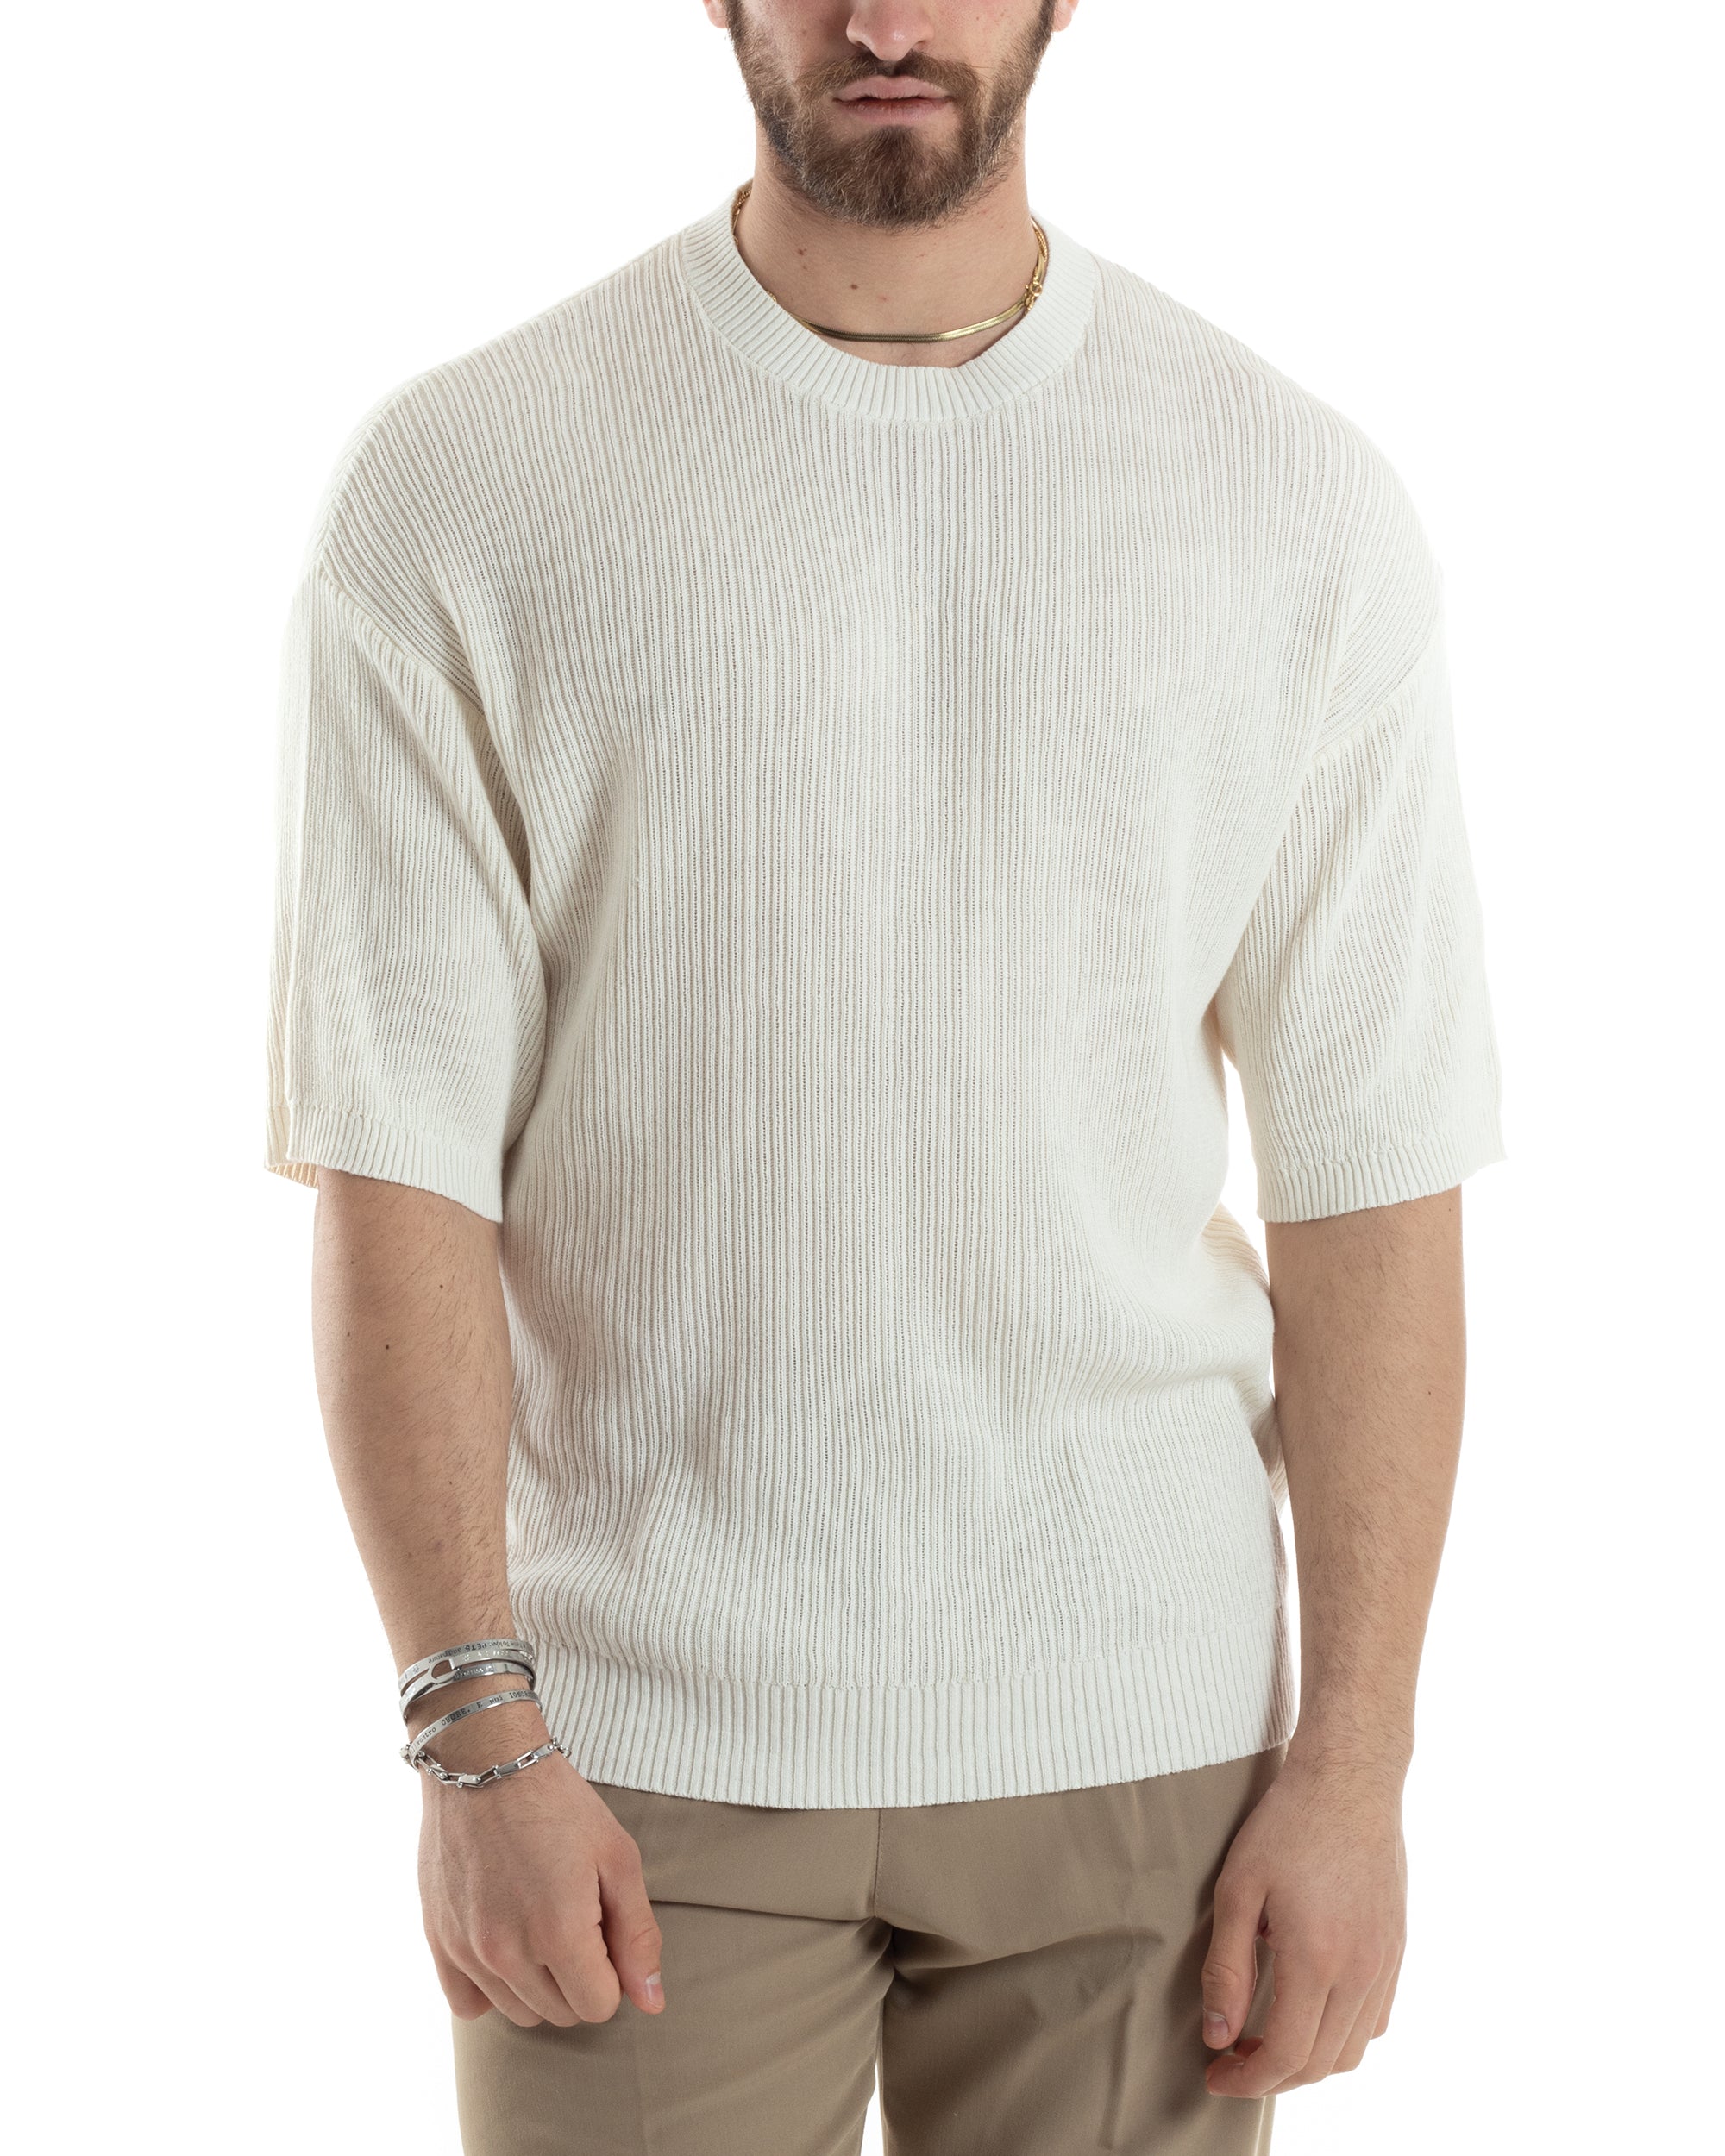 T-shirt Uomo Maglia In Filo A Costine Maniche Corte Basic Oversize Panna Casual GIOSAL-TS3000A